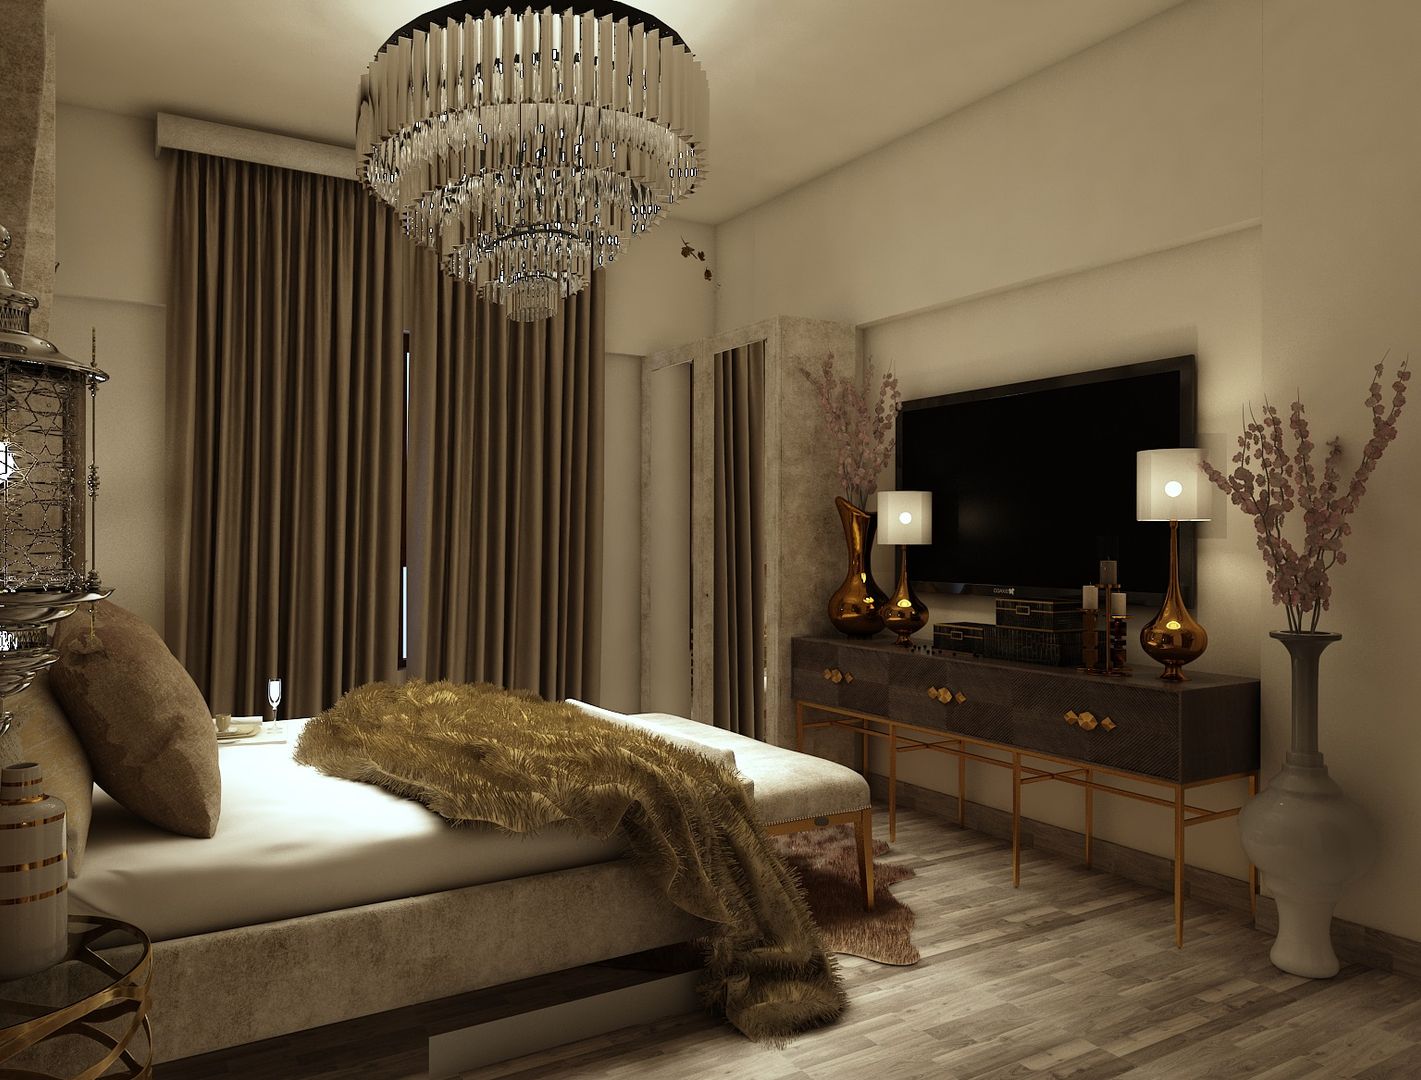 master bedroom tv unit design Rhythm And Emphasis Design Studio Bedroom